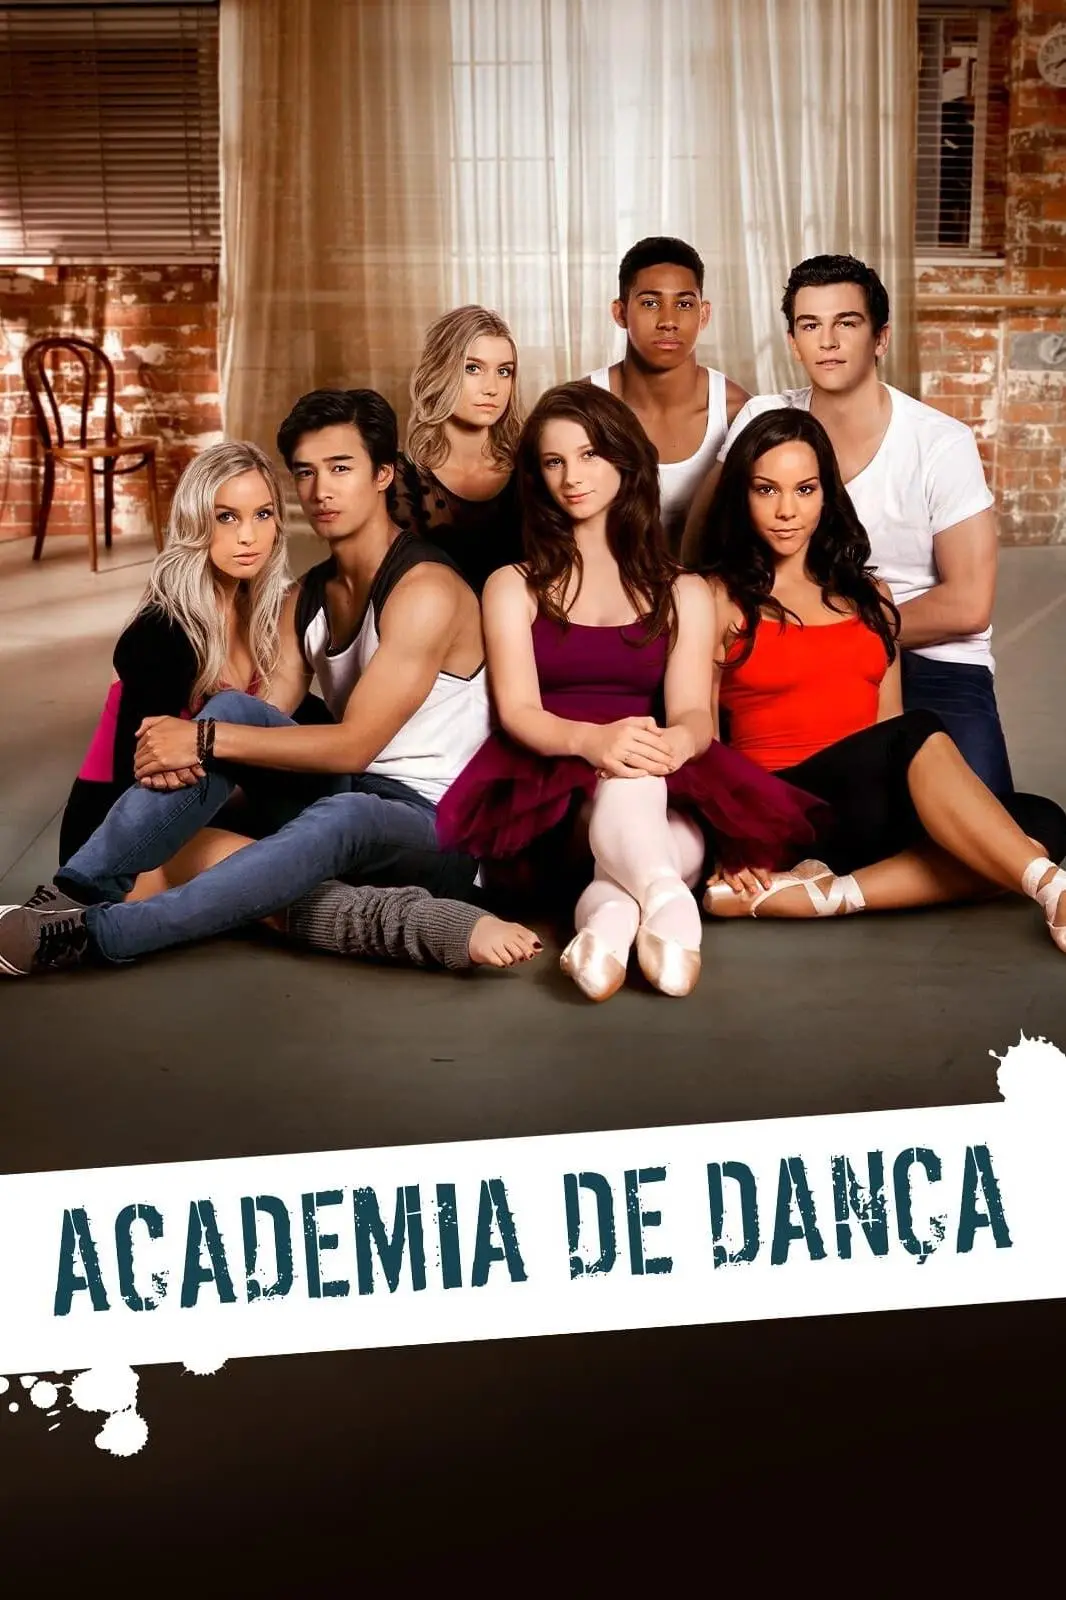 Dance Academy_peliplat